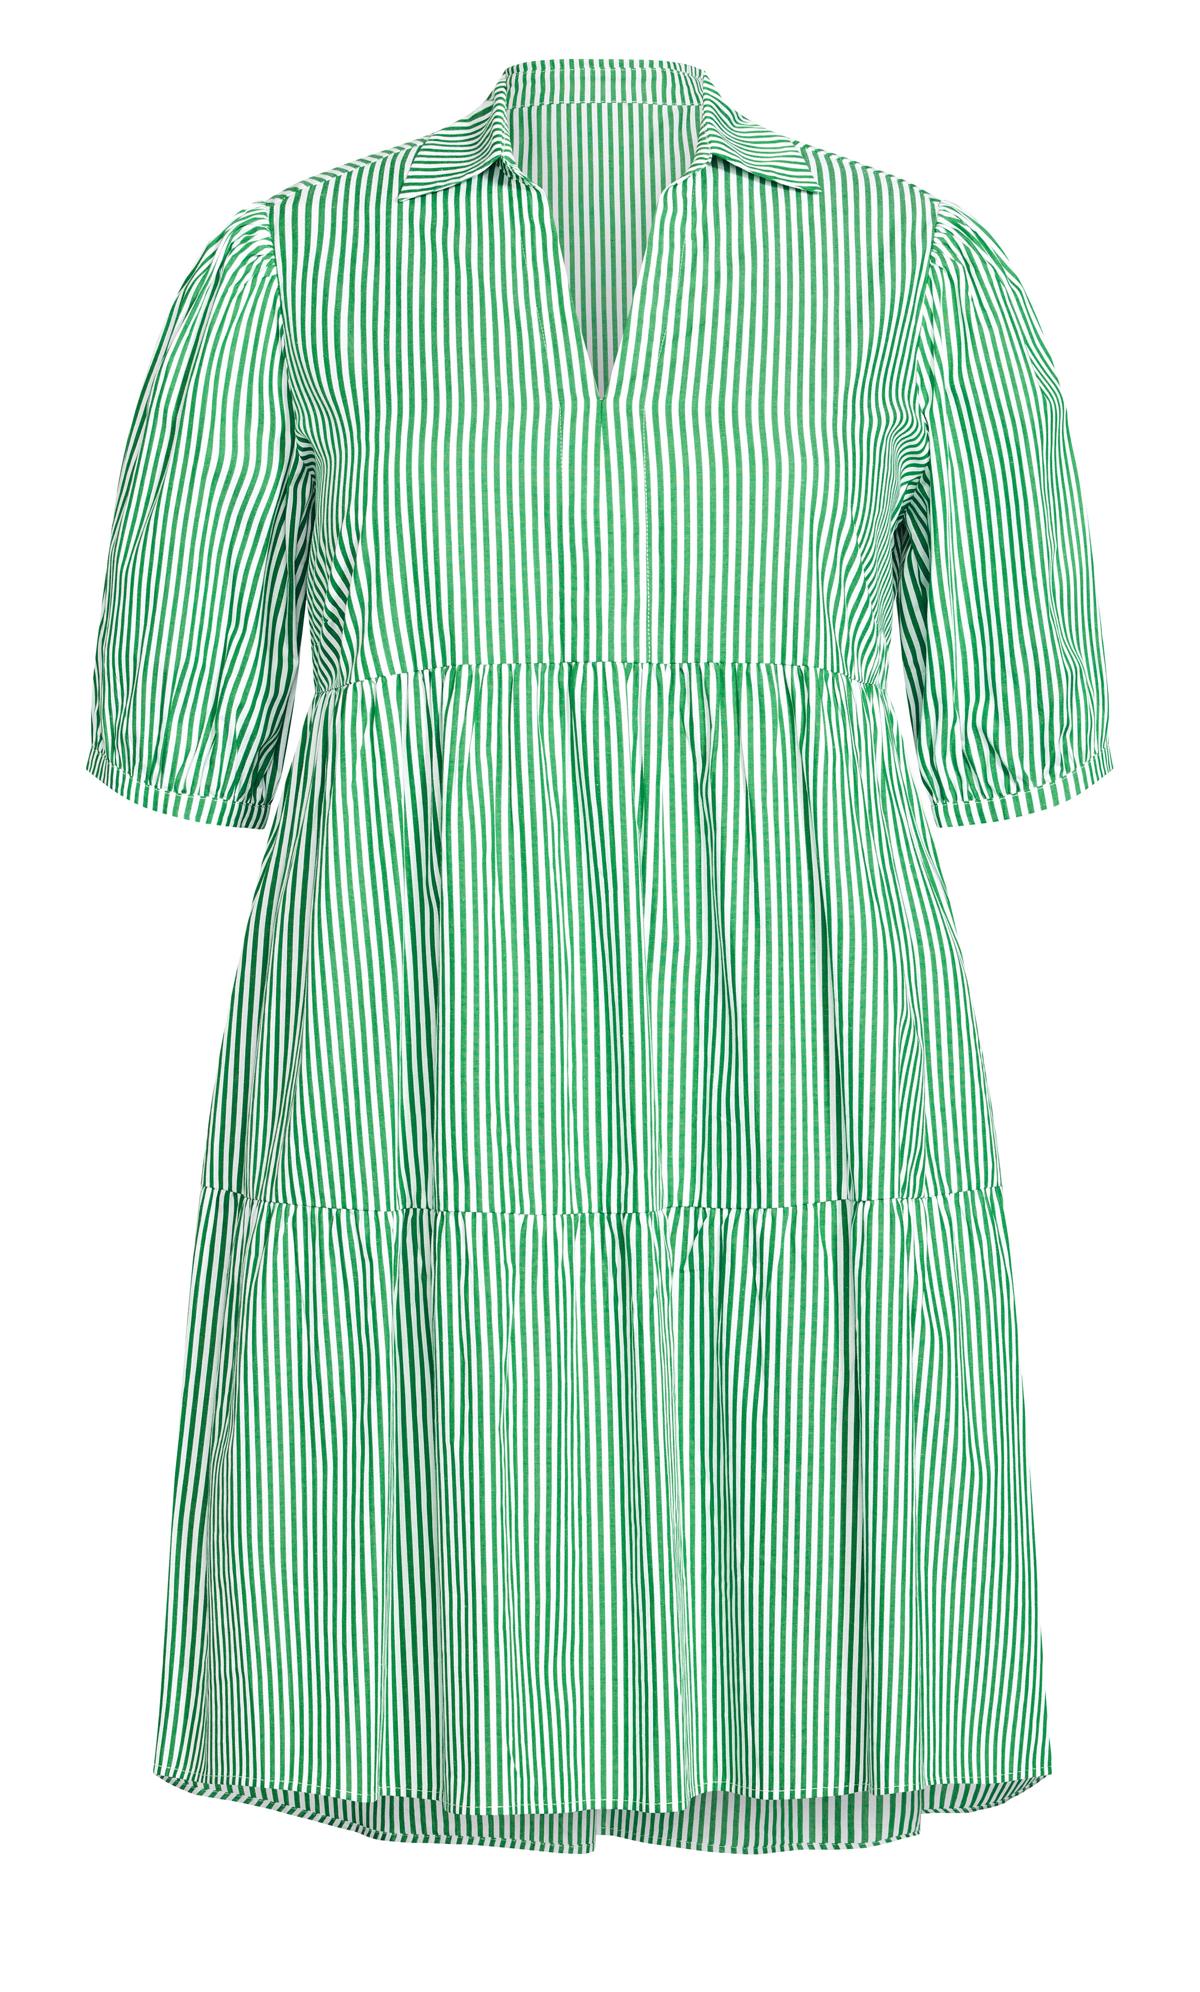 Evans Green Pinstripe Tiered Shirt Dress 3